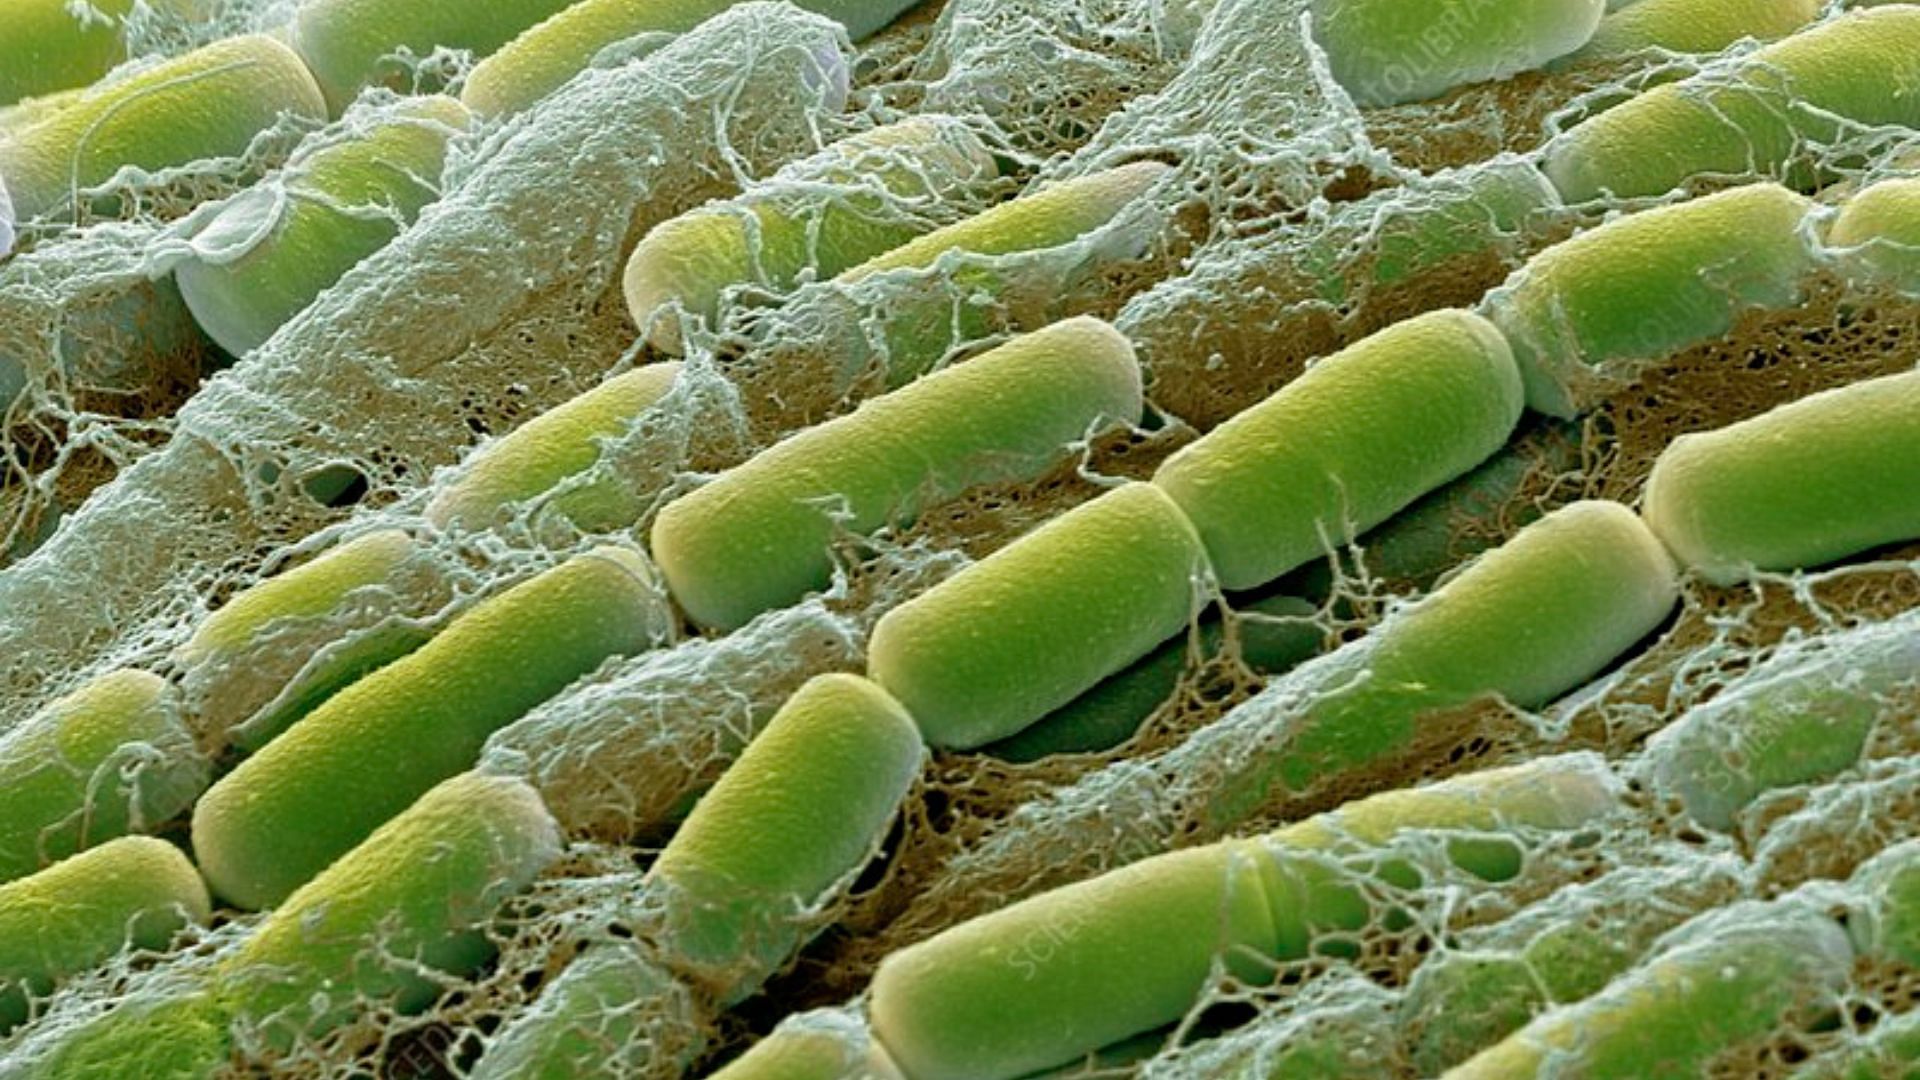 Bacillus Megaterium can benefit your soil